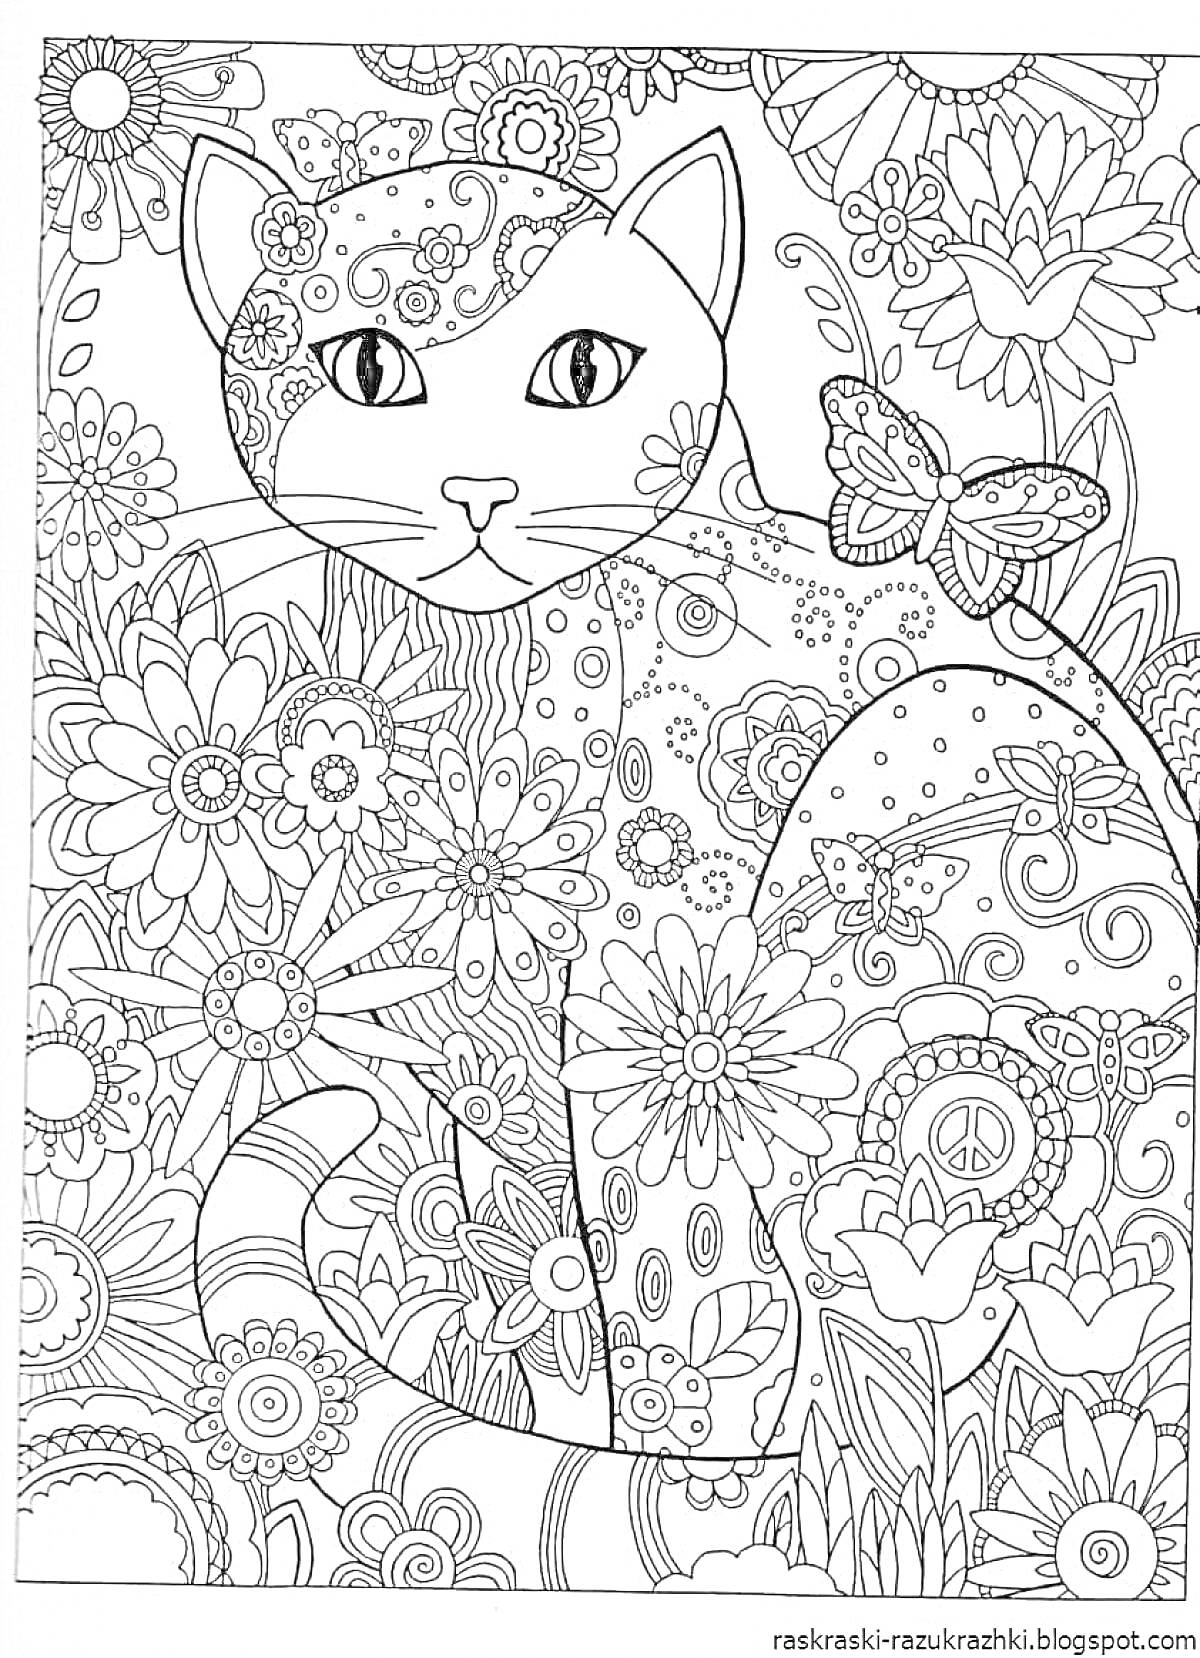 Раскраска Кошка, украшенная цветами и узорами, на фоне из цветов и листьев, с бабочкой на спине